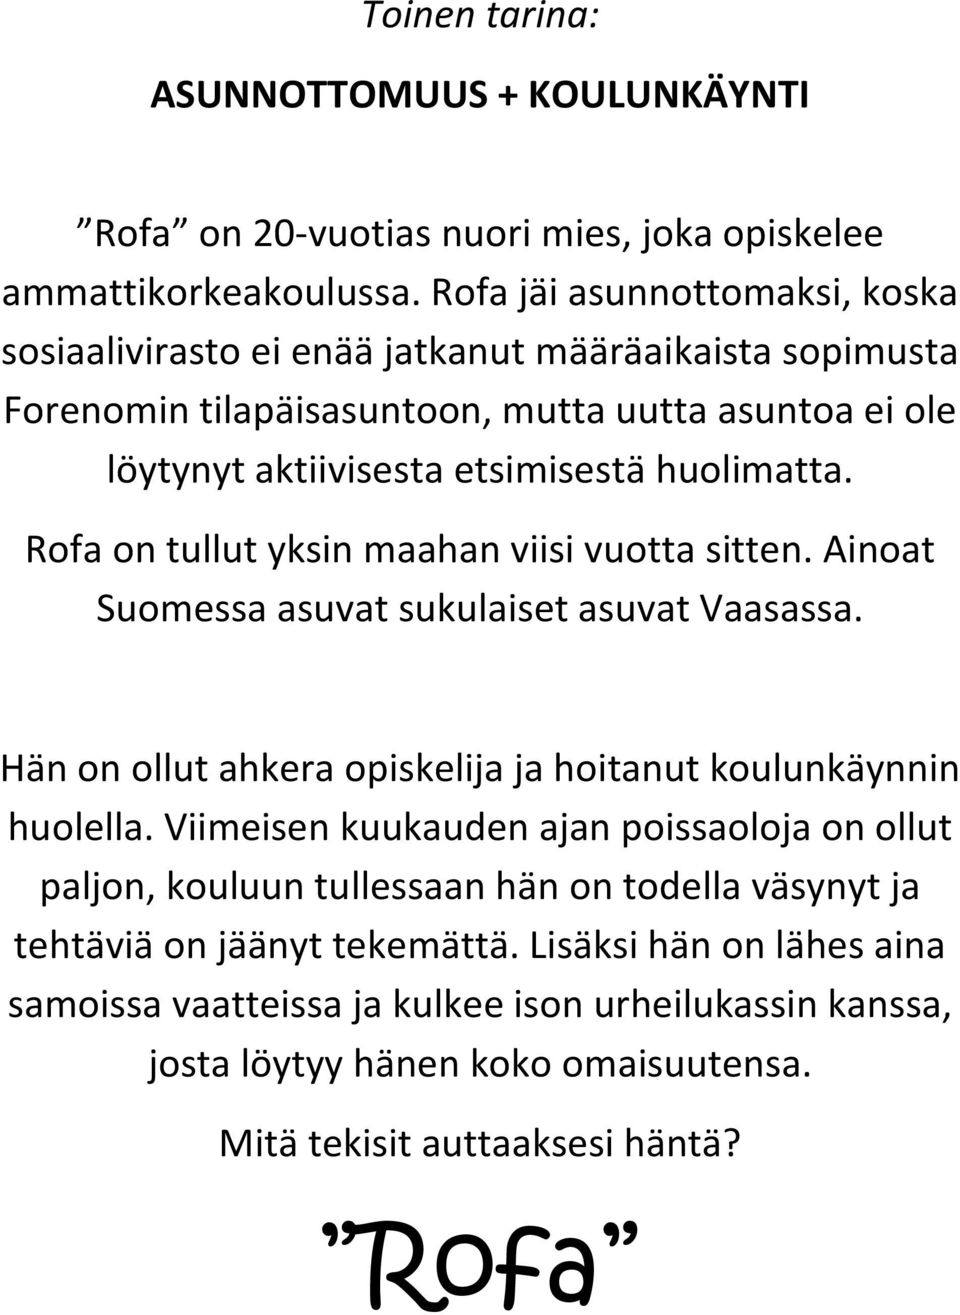 Rofa on tullut yksin maahan viisi vuotta sitten. Ainoat Suomessa asuvat sukulaiset asuvat Vaasassa. Hän on ollut ahkera opiskelija ja hoitanut koulunkäynnin huolella.